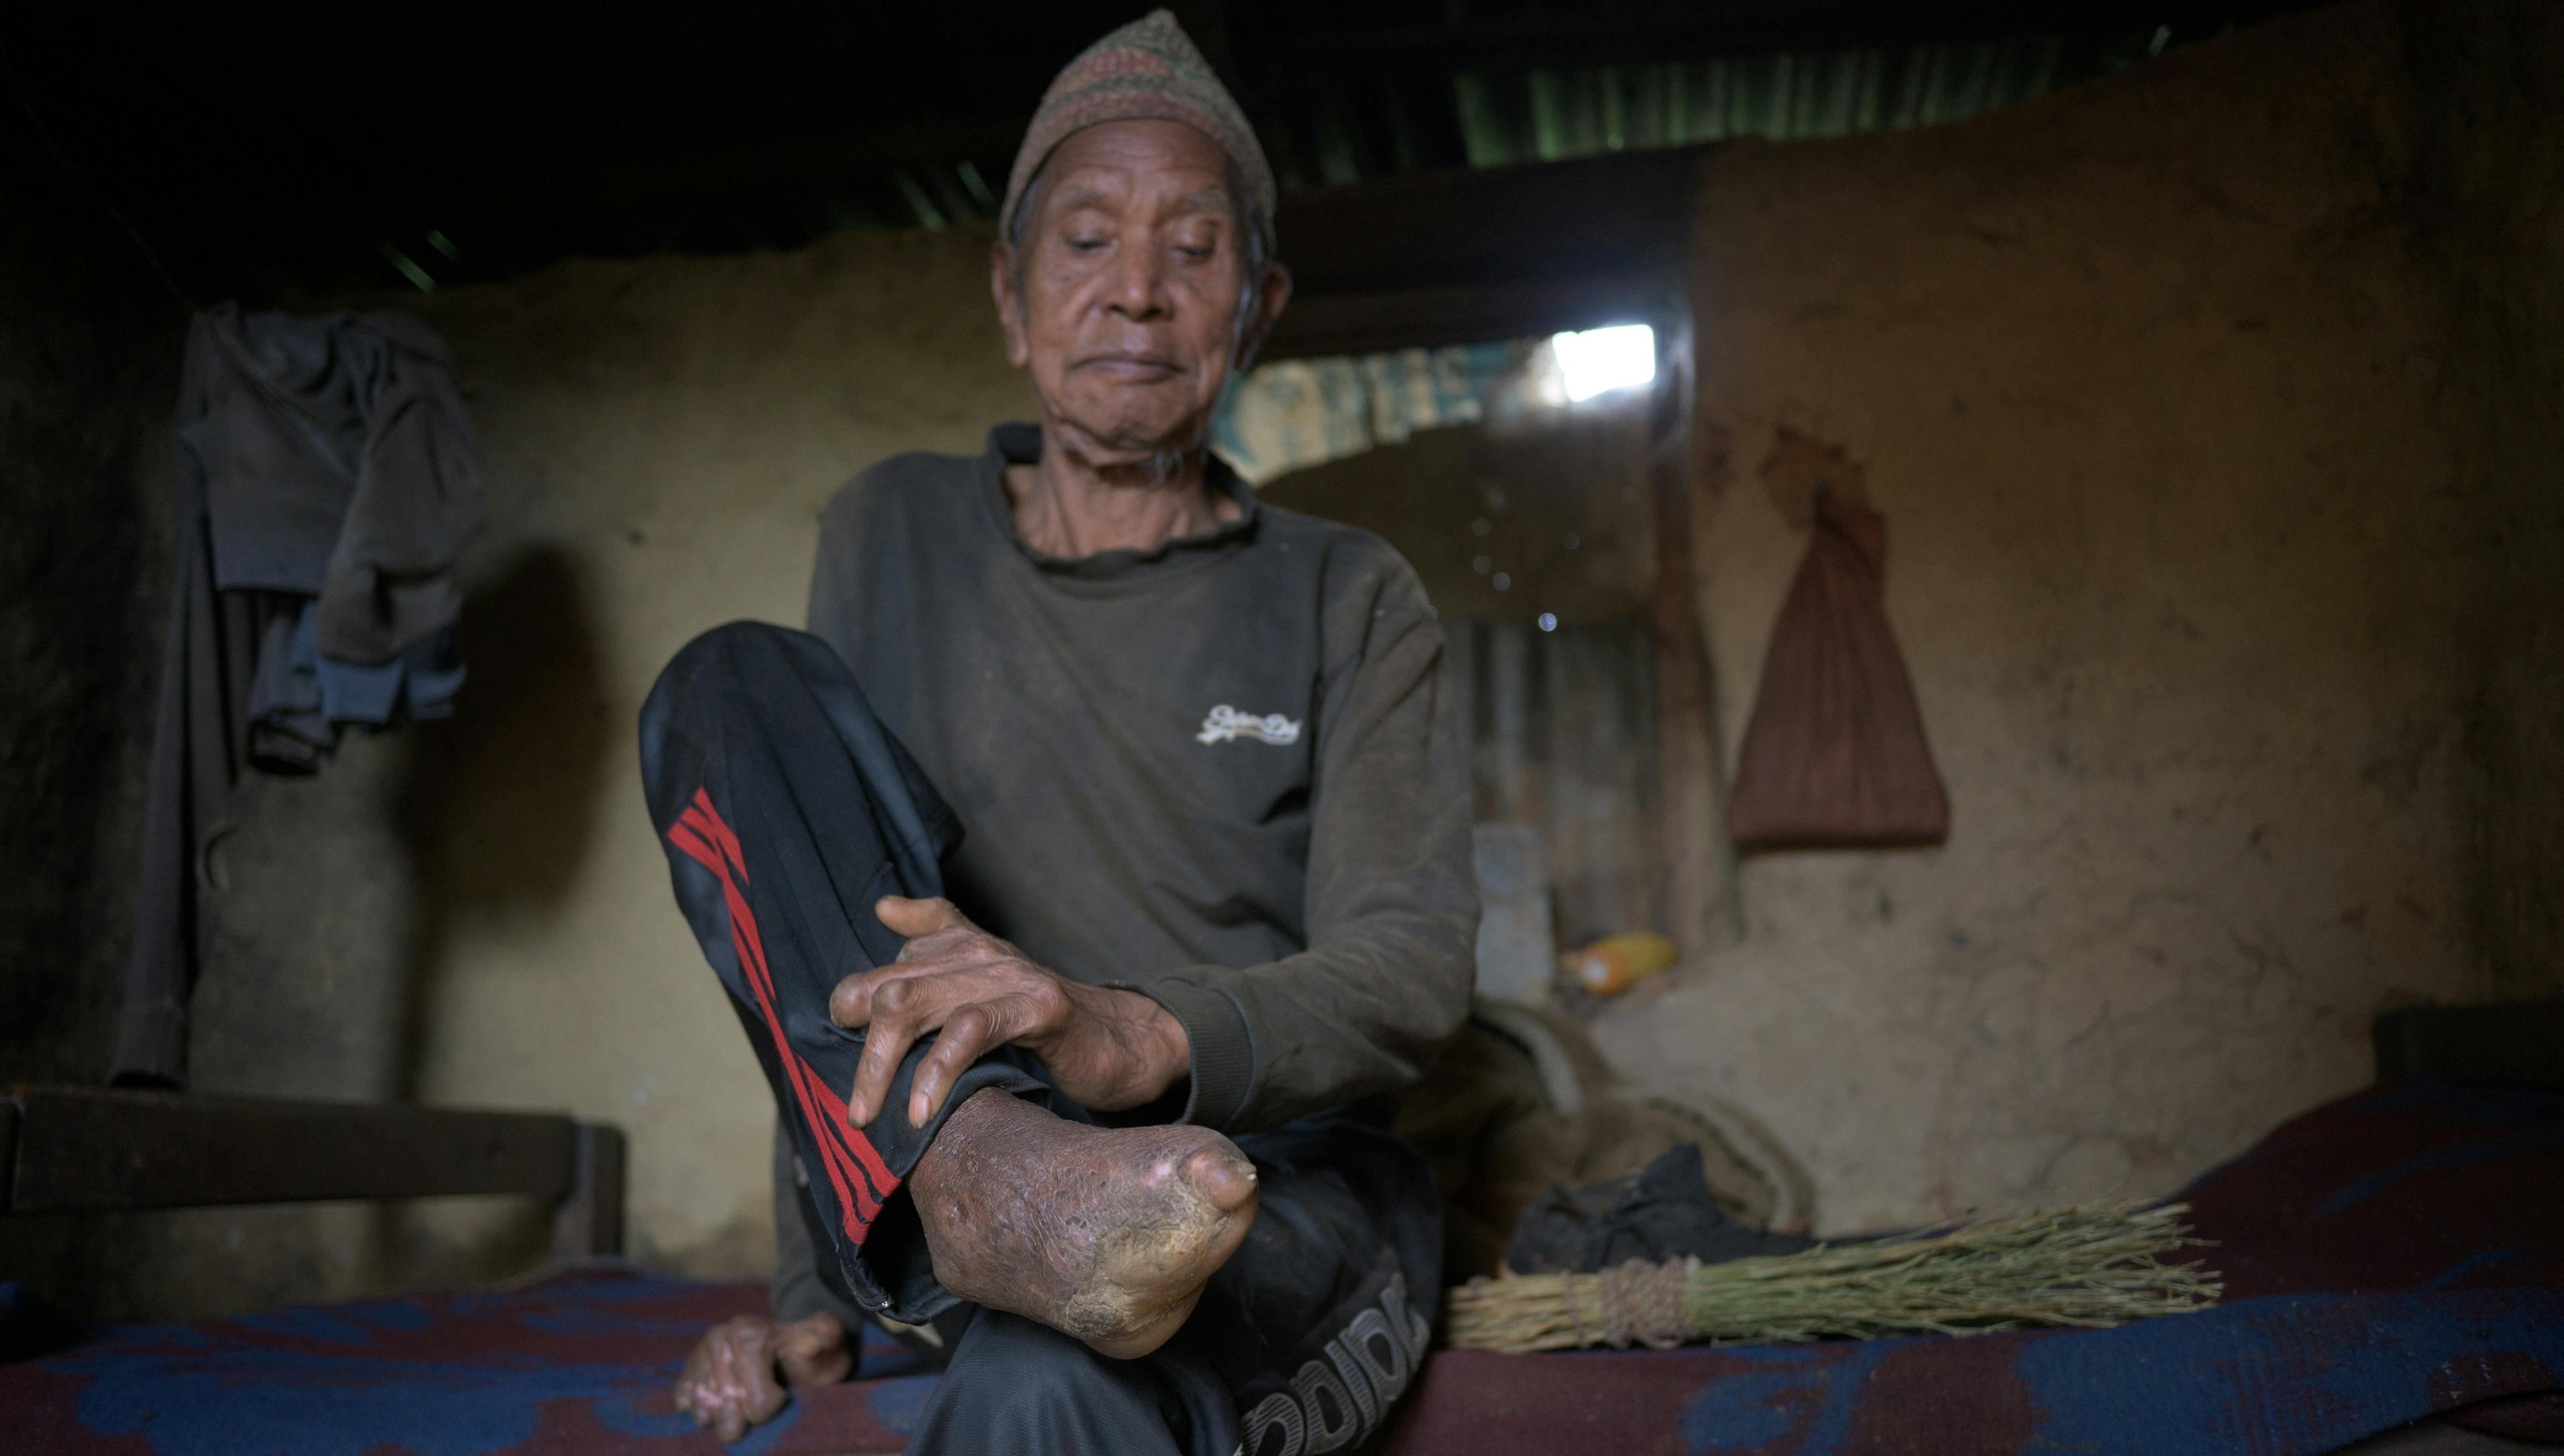 Bal Bhadadur Danuwar sitzt auf einem Bett und hält seinen Fuss ohne Zehen und seine verwundeten Hände ins Bild.